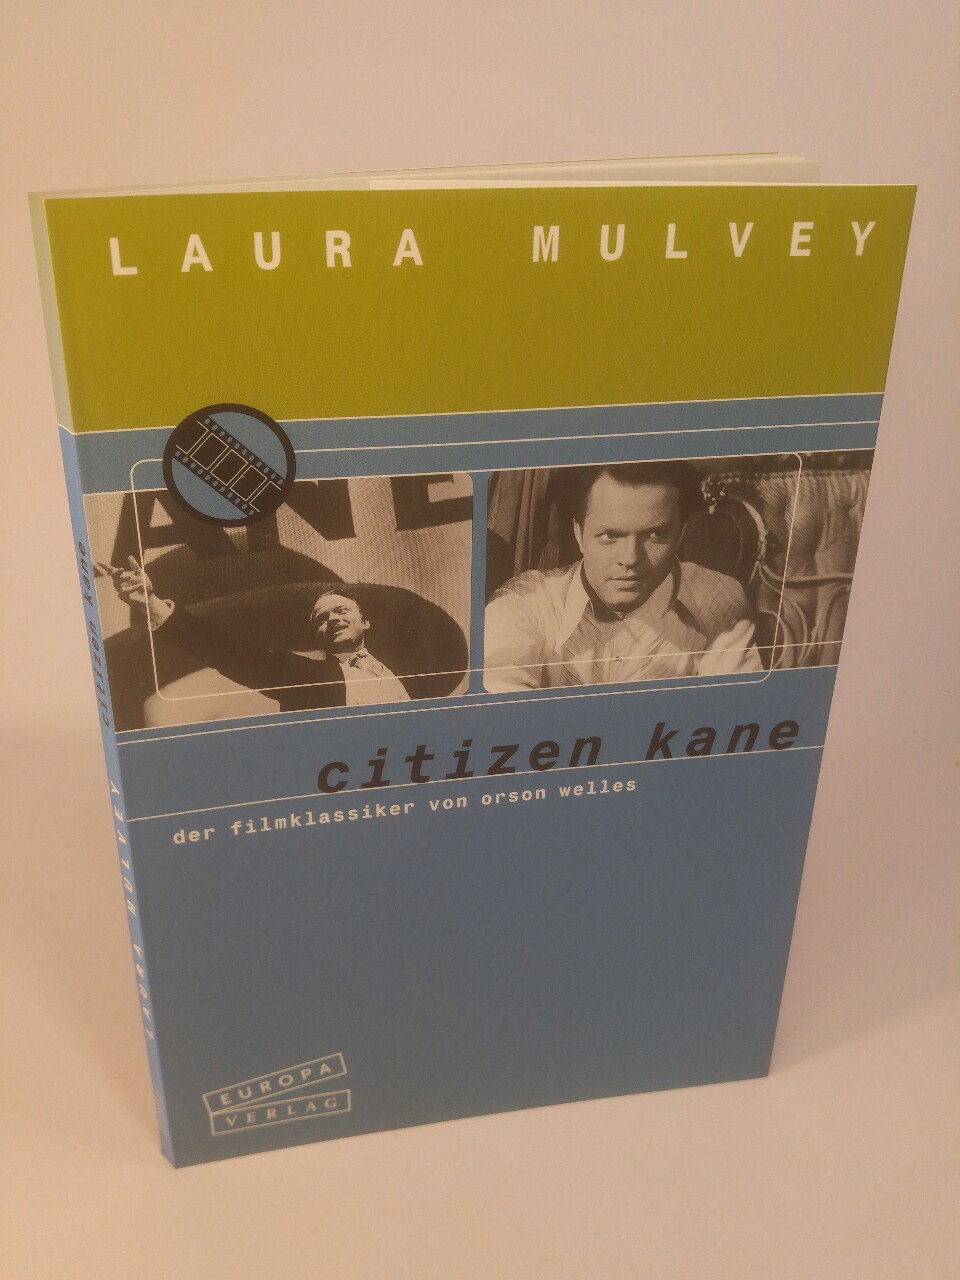 Citizen Kane Der Filmklassiker von Orson Welles - Mulvey, Laura und Reinhard Tiffert